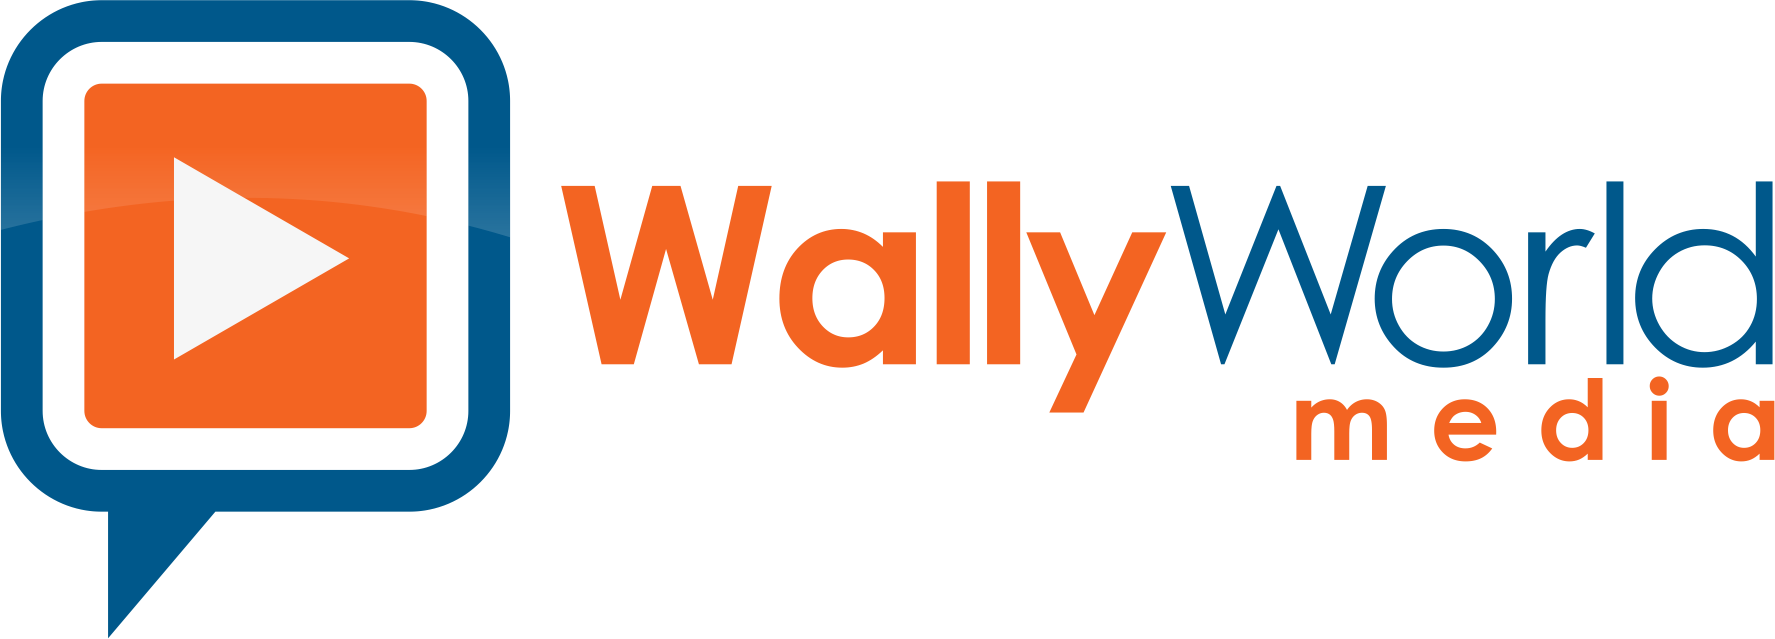 Wally World Media